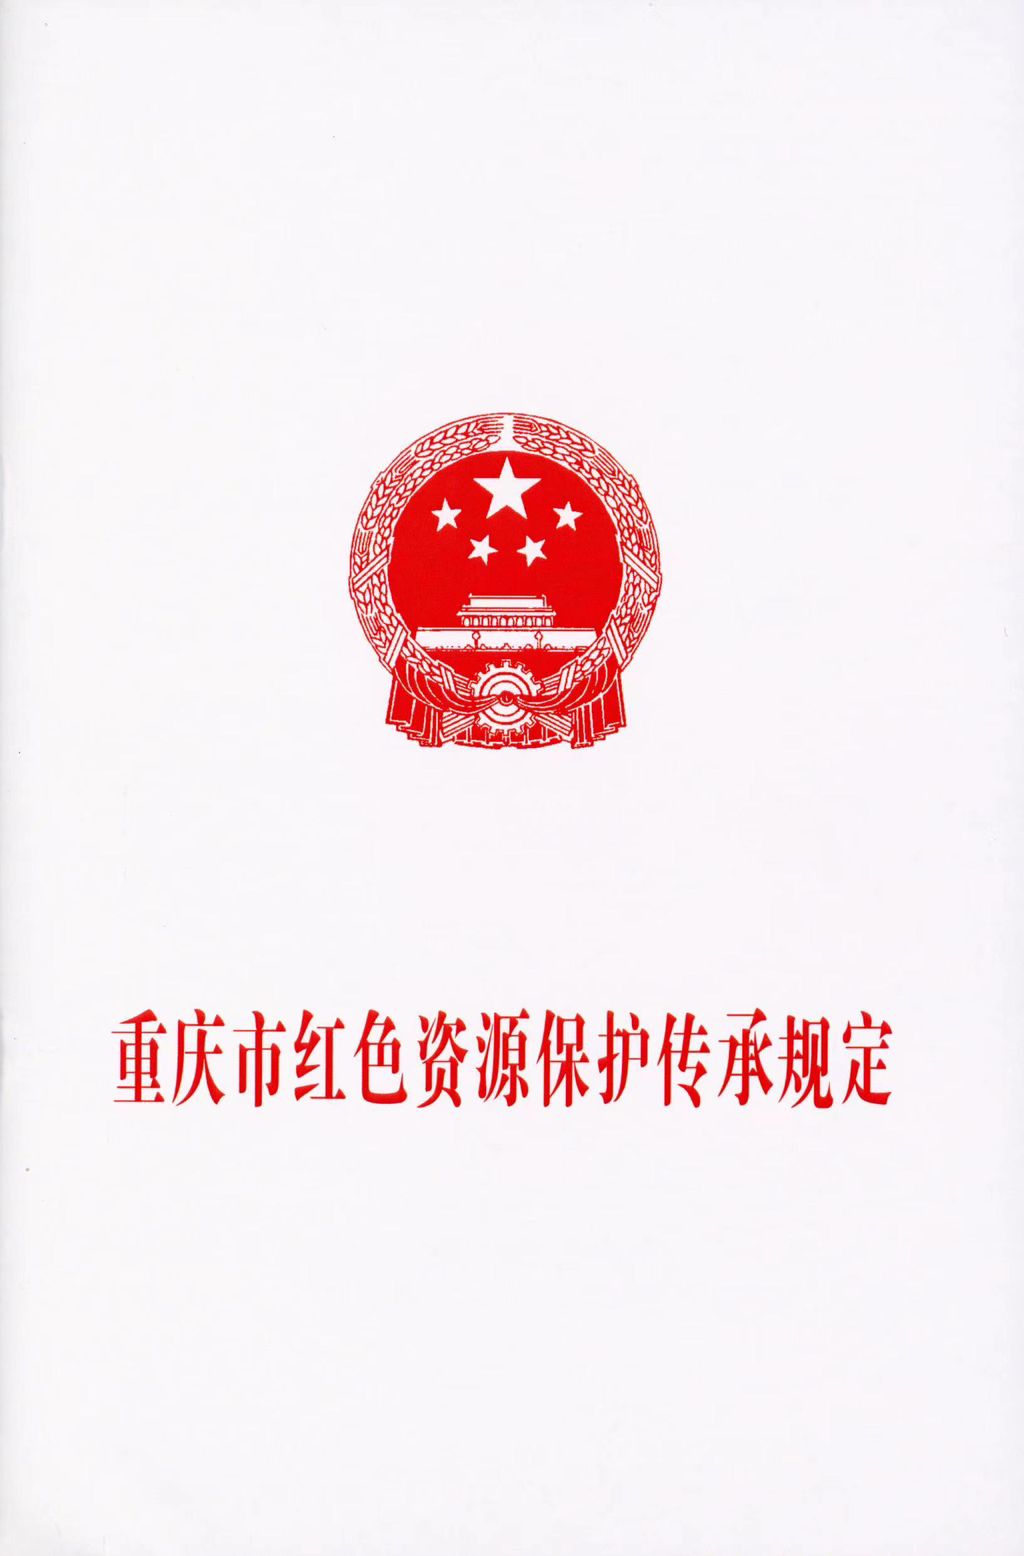 《重庆市红色资源保护传承规定》。市展览办供图